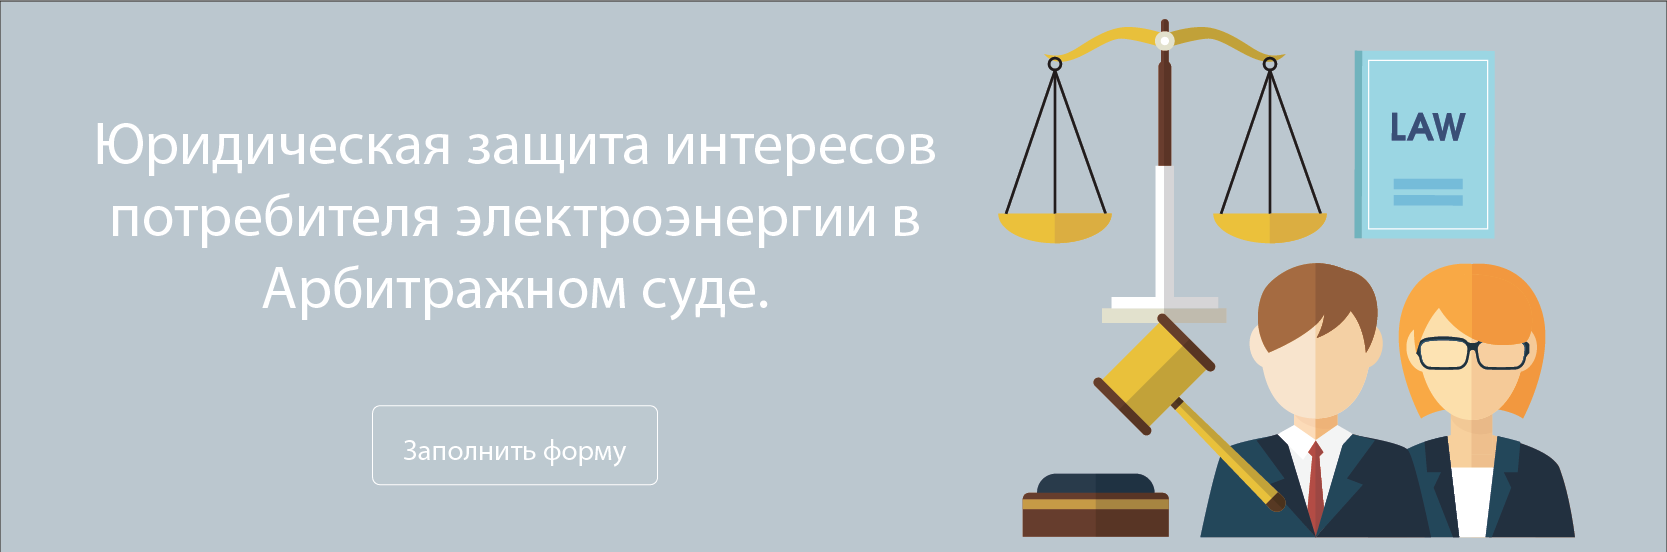 Юридическая-защита-интересов-потребителя-электроэнергии-в-Арбитражном-суде.